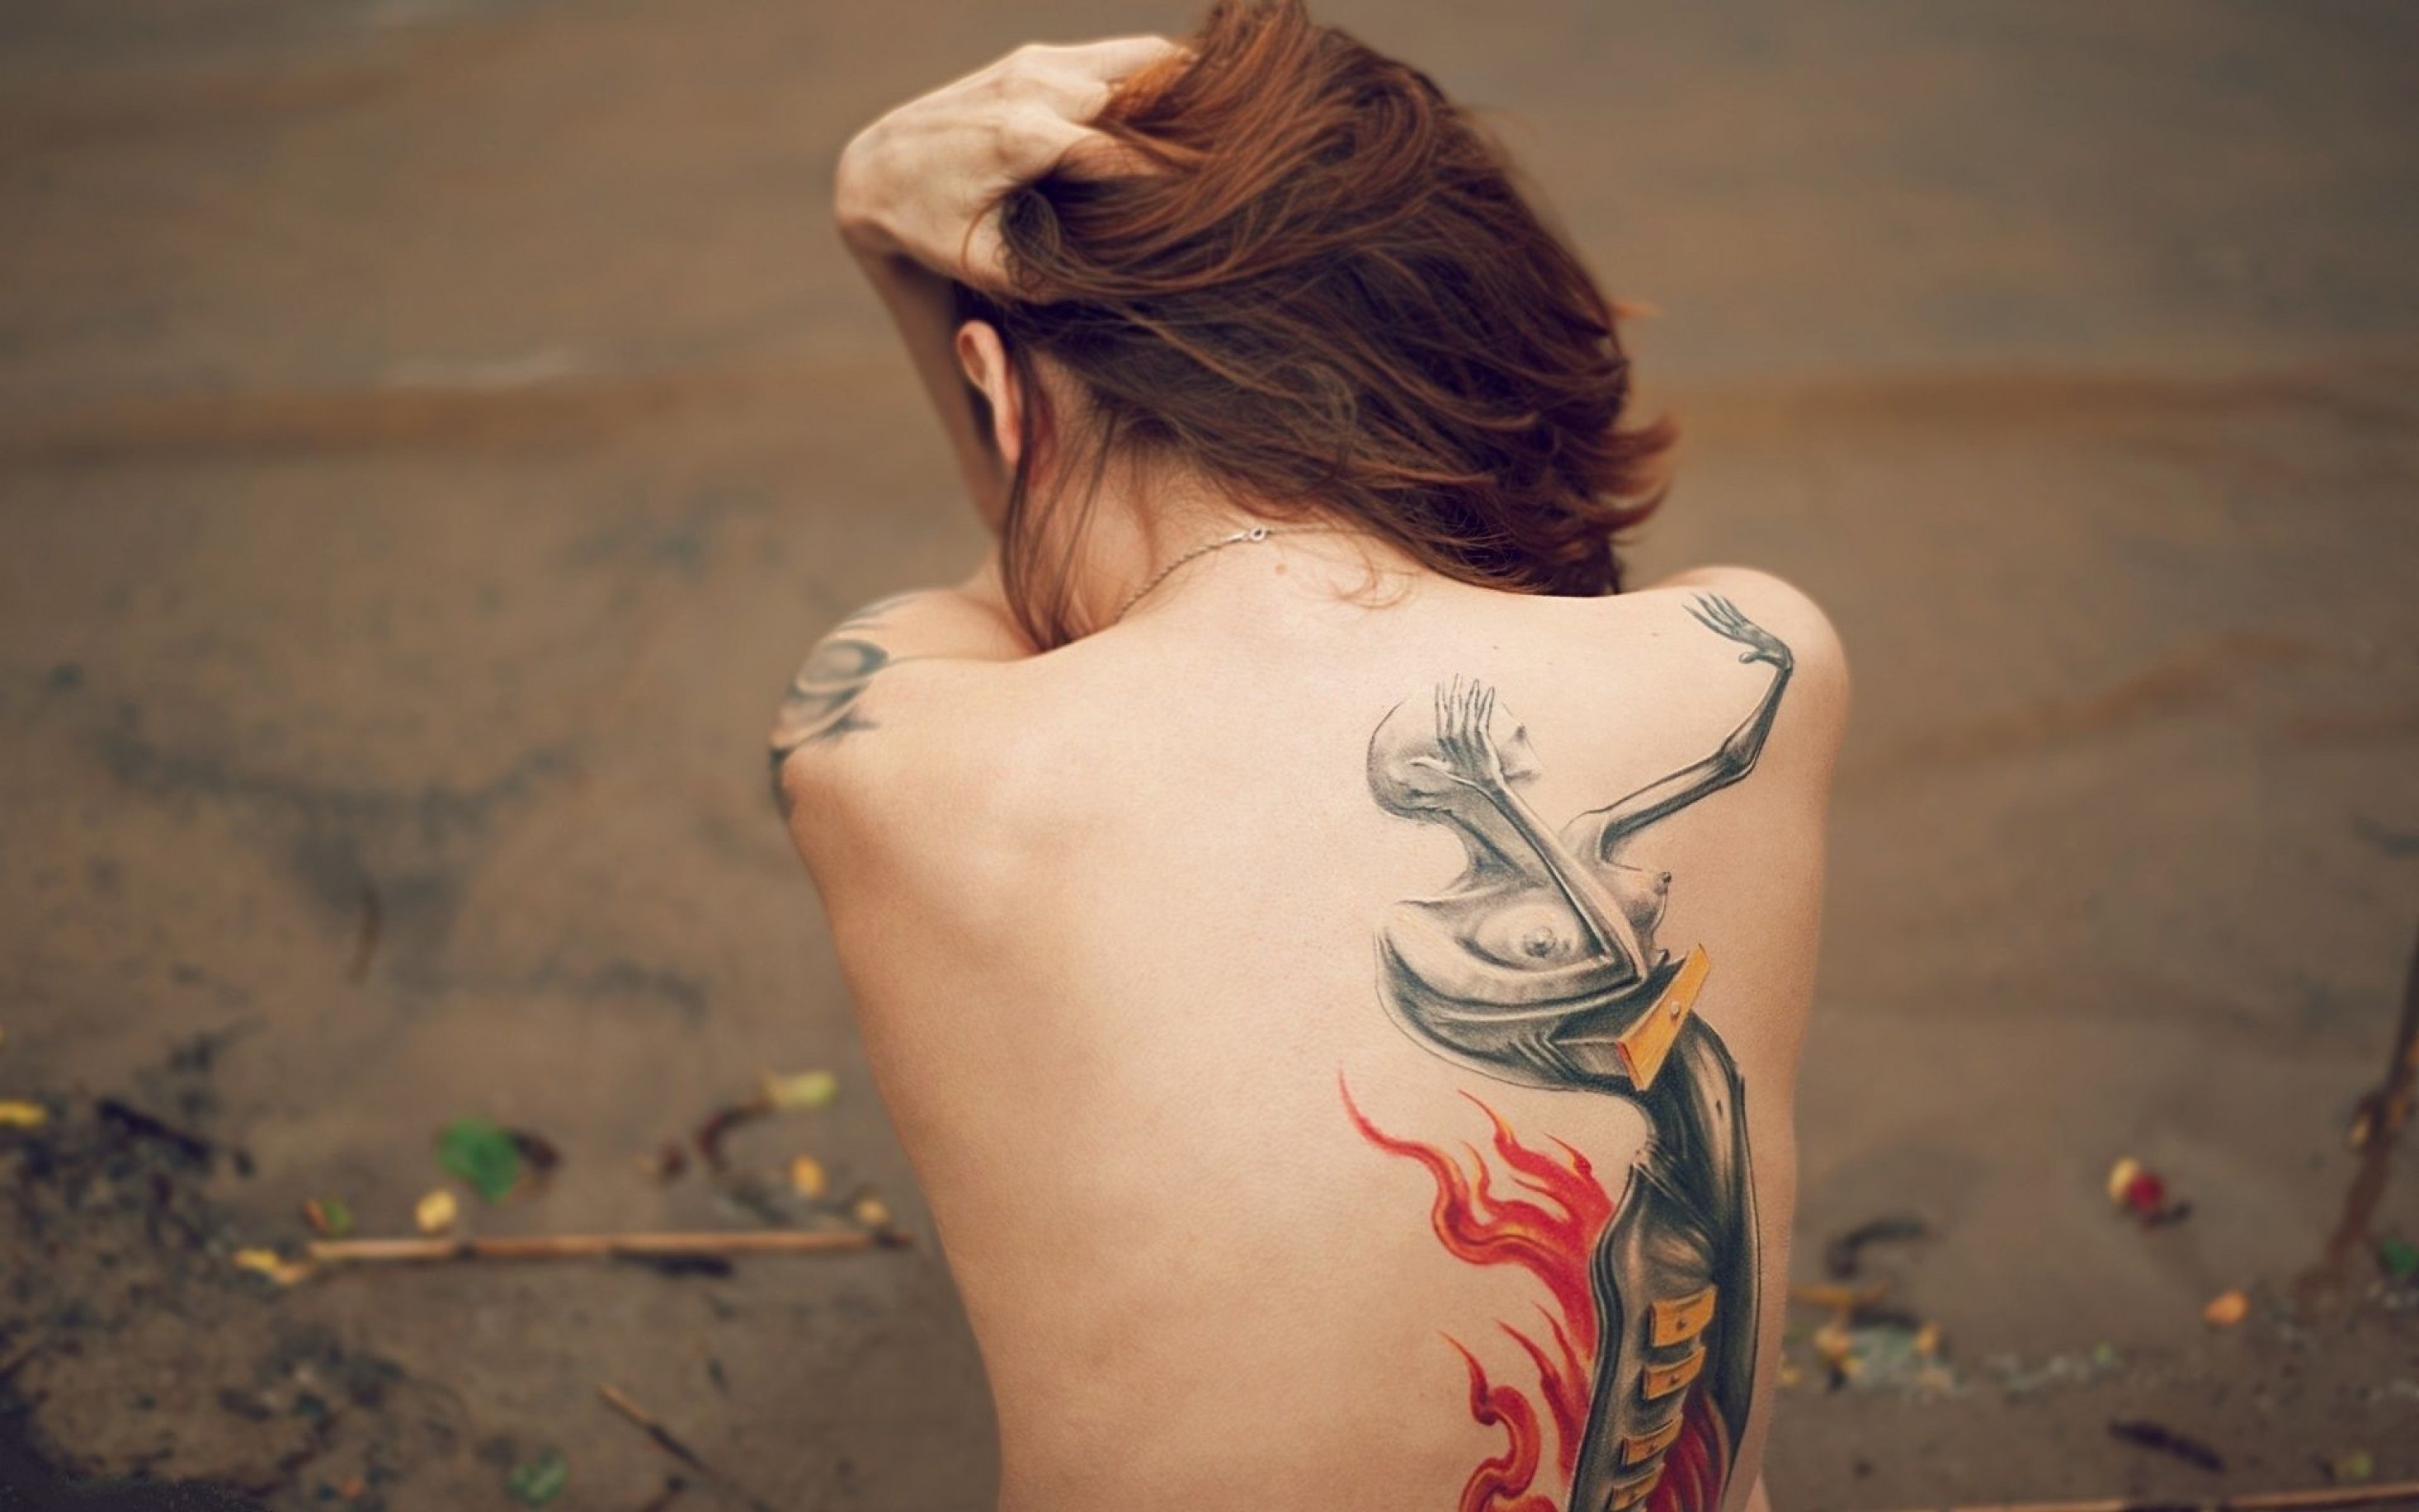 tattoo wallpaper,shoulder,tattoo,arm,temporary tattoo,joint